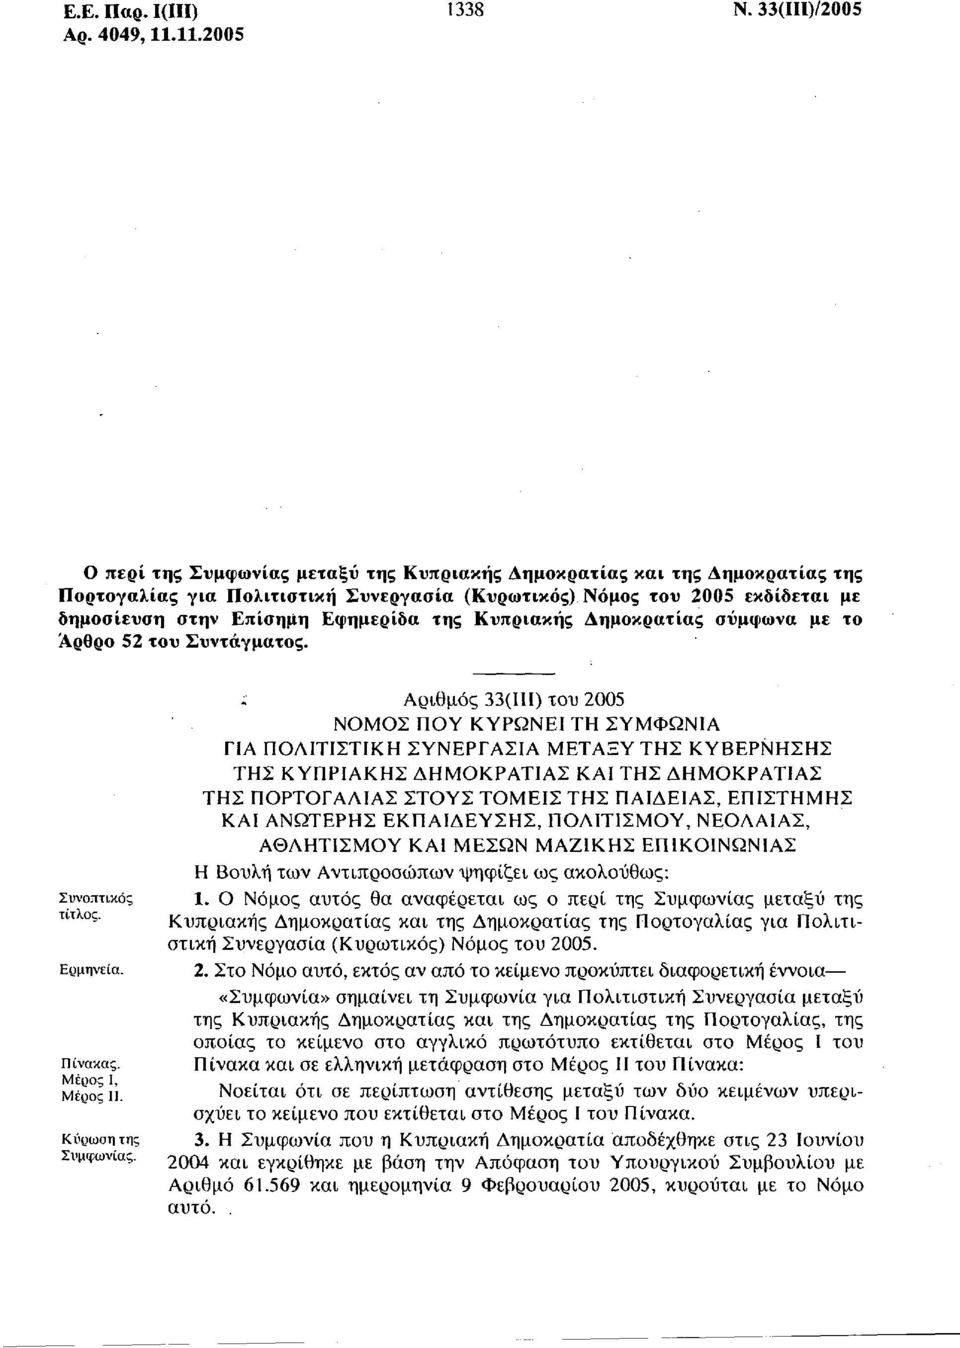 Εφημερίδα της Κυπριακής Δημοκρατίας σύμφωνα με το Άρθρο 52 του Συντάγματος. Συνοπτικός τίτλος. Ερμηνεία. Πίνακας. Μέρος Ι, Μέρος II. Κύρωση της Συμφωνίας.